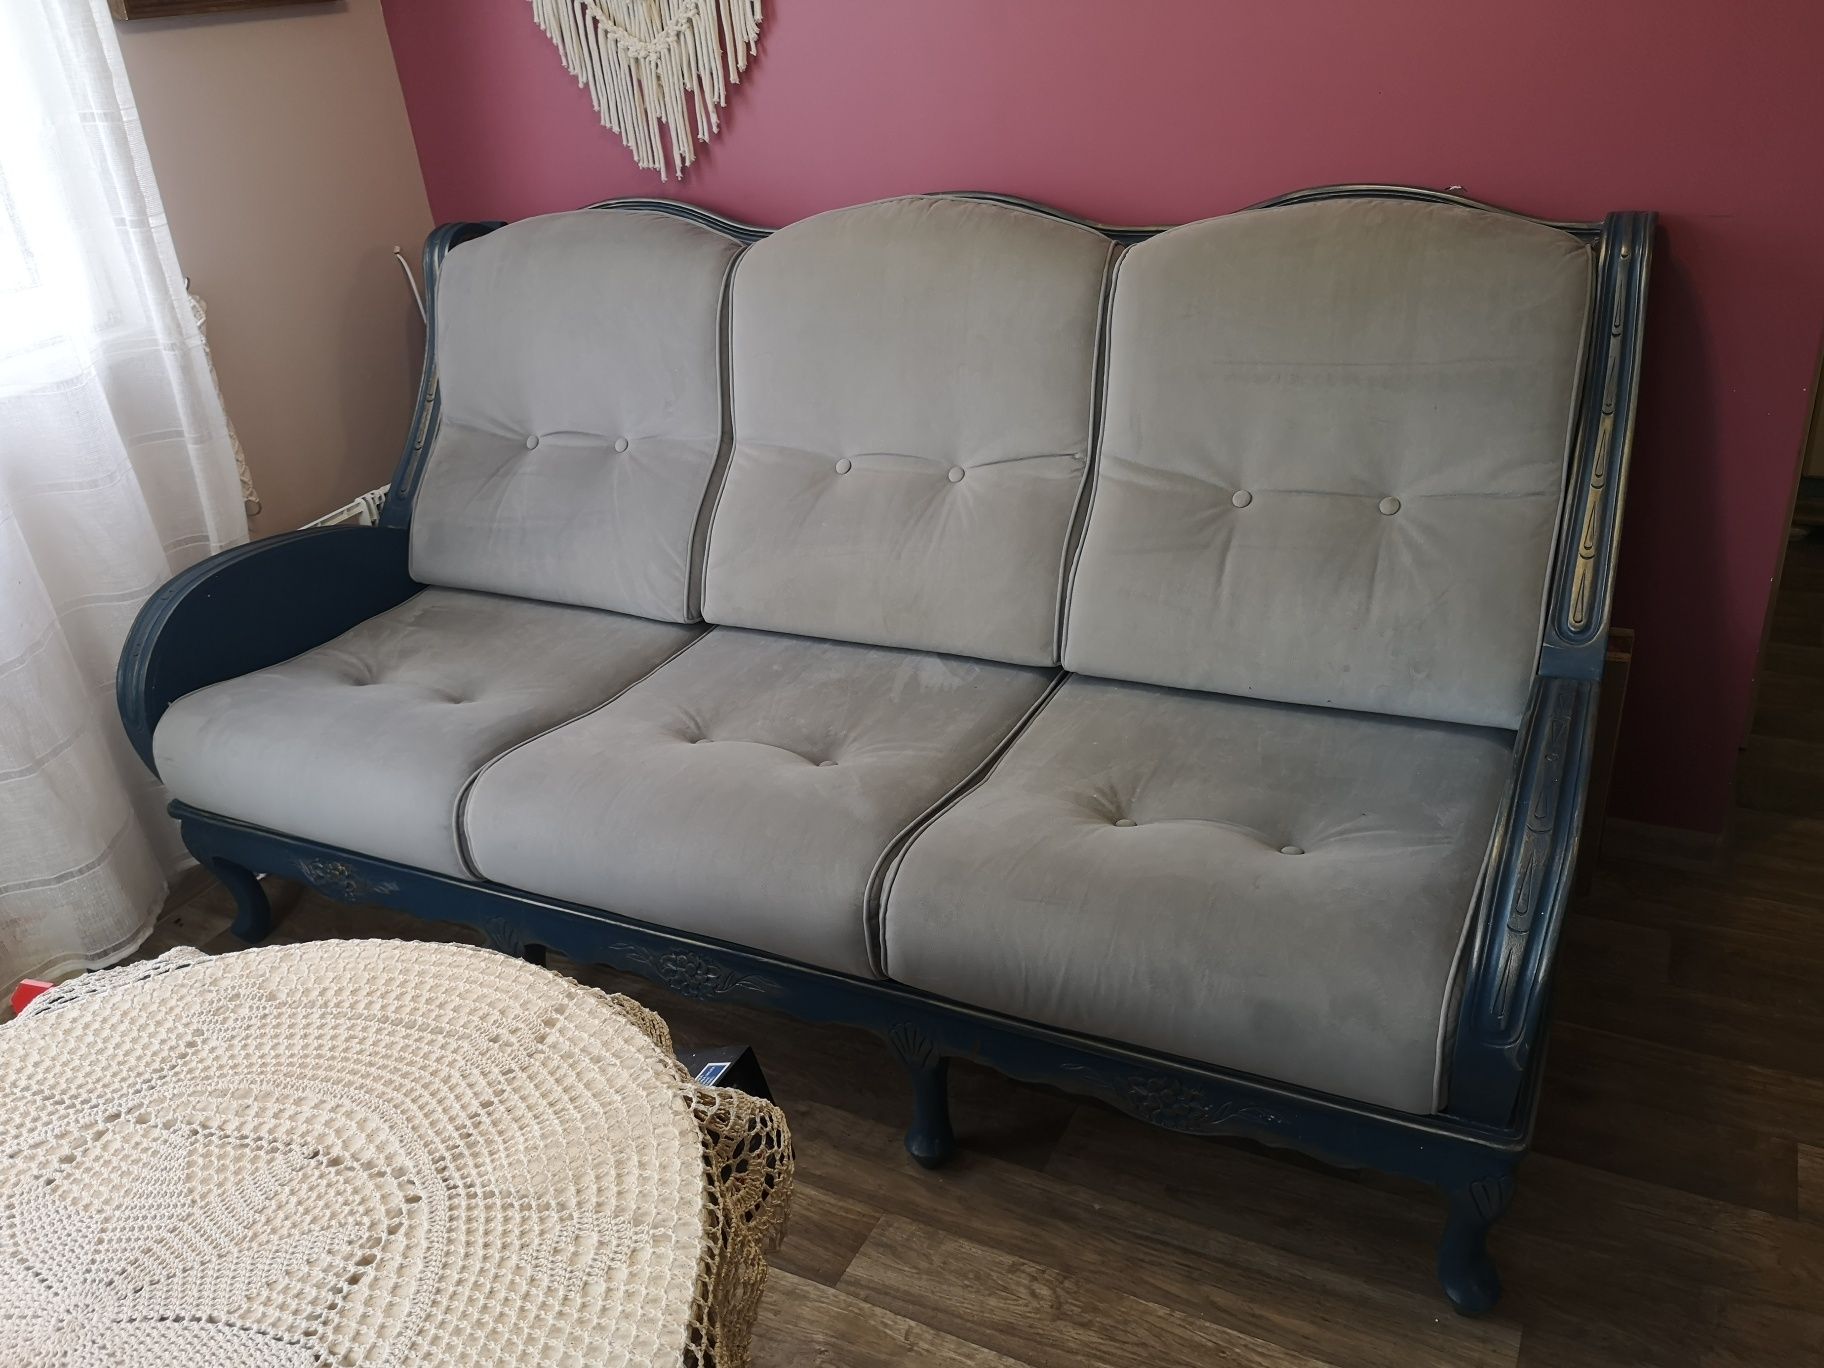 Sofa i dwa fotele vintage, drewno, po renowacji, cena 2tys.